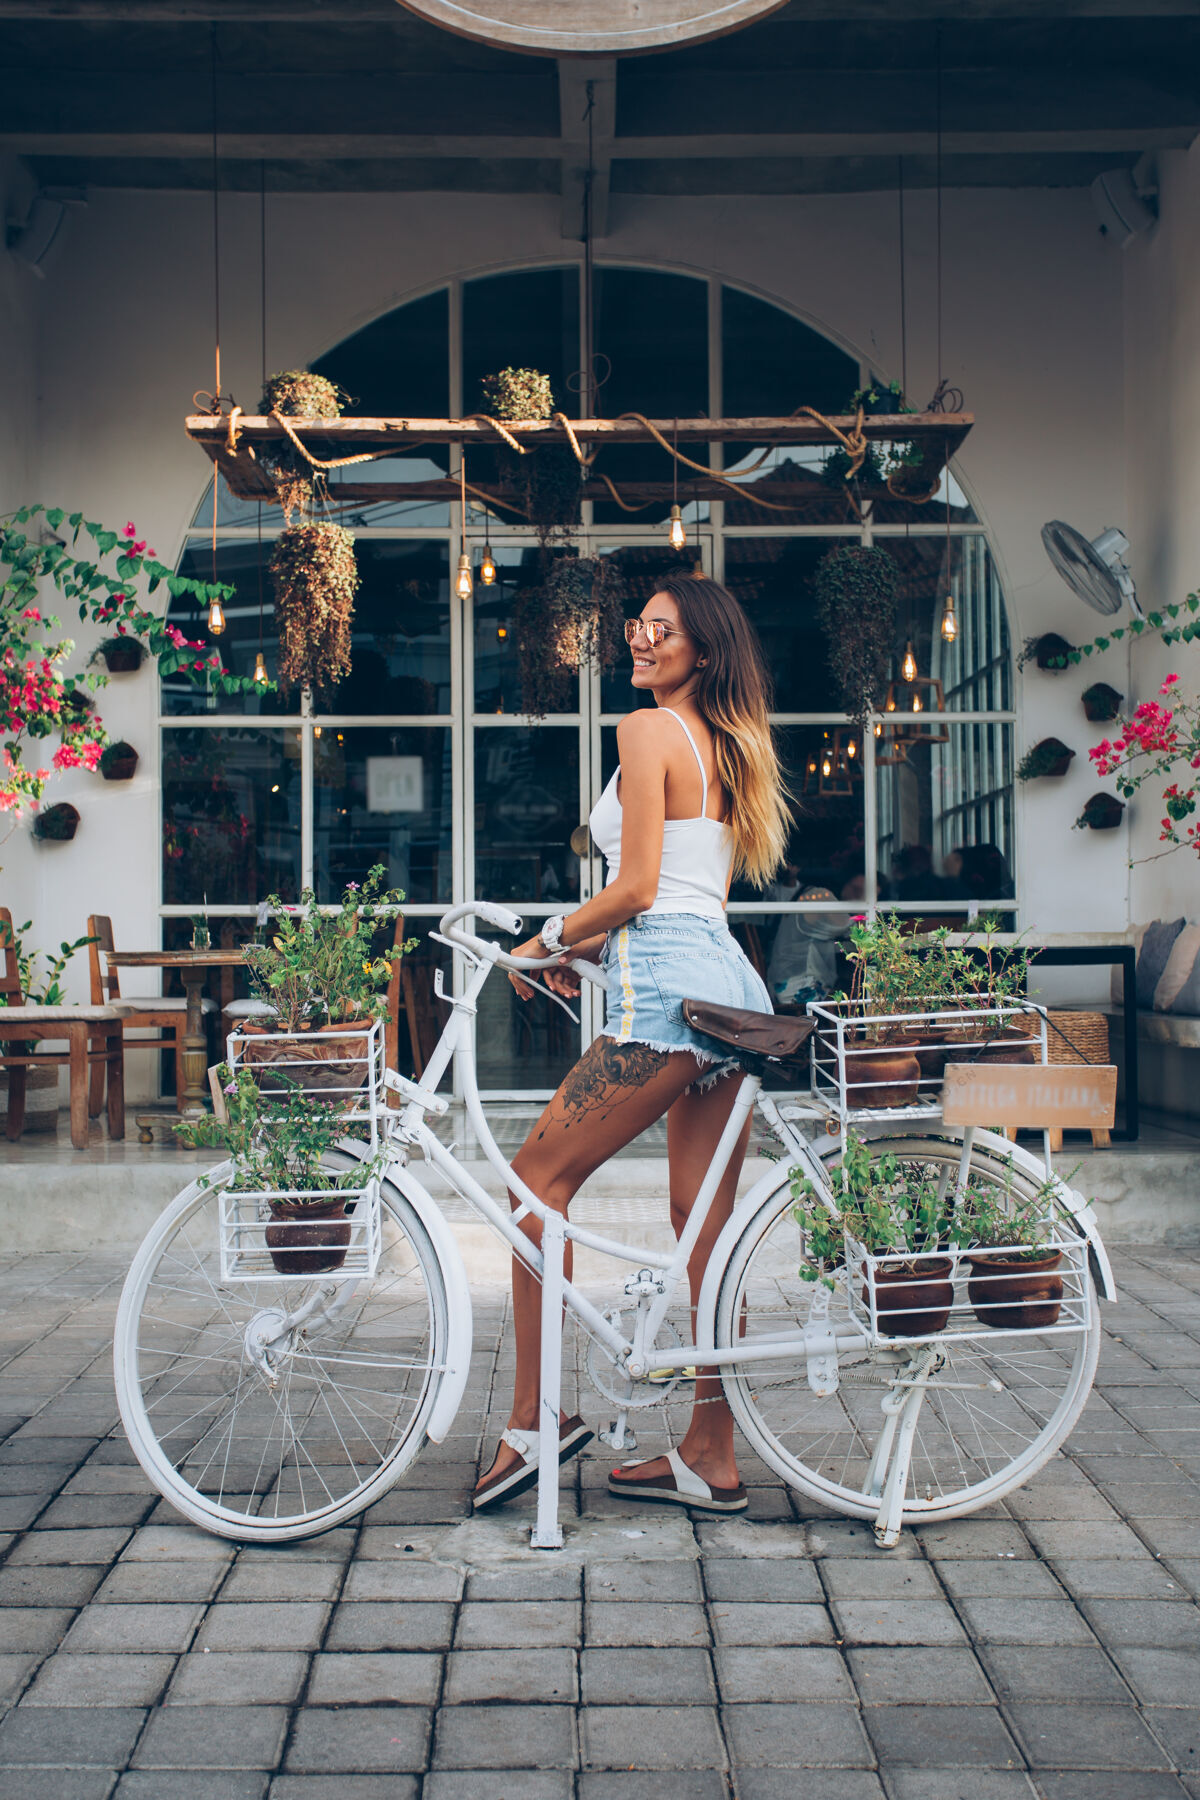 休息穿着牛仔裤短裤和白色上衣的可爱的纹身白人妇女站在街边咖啡馆的背景下骑自行车咖啡自行车骑自行车